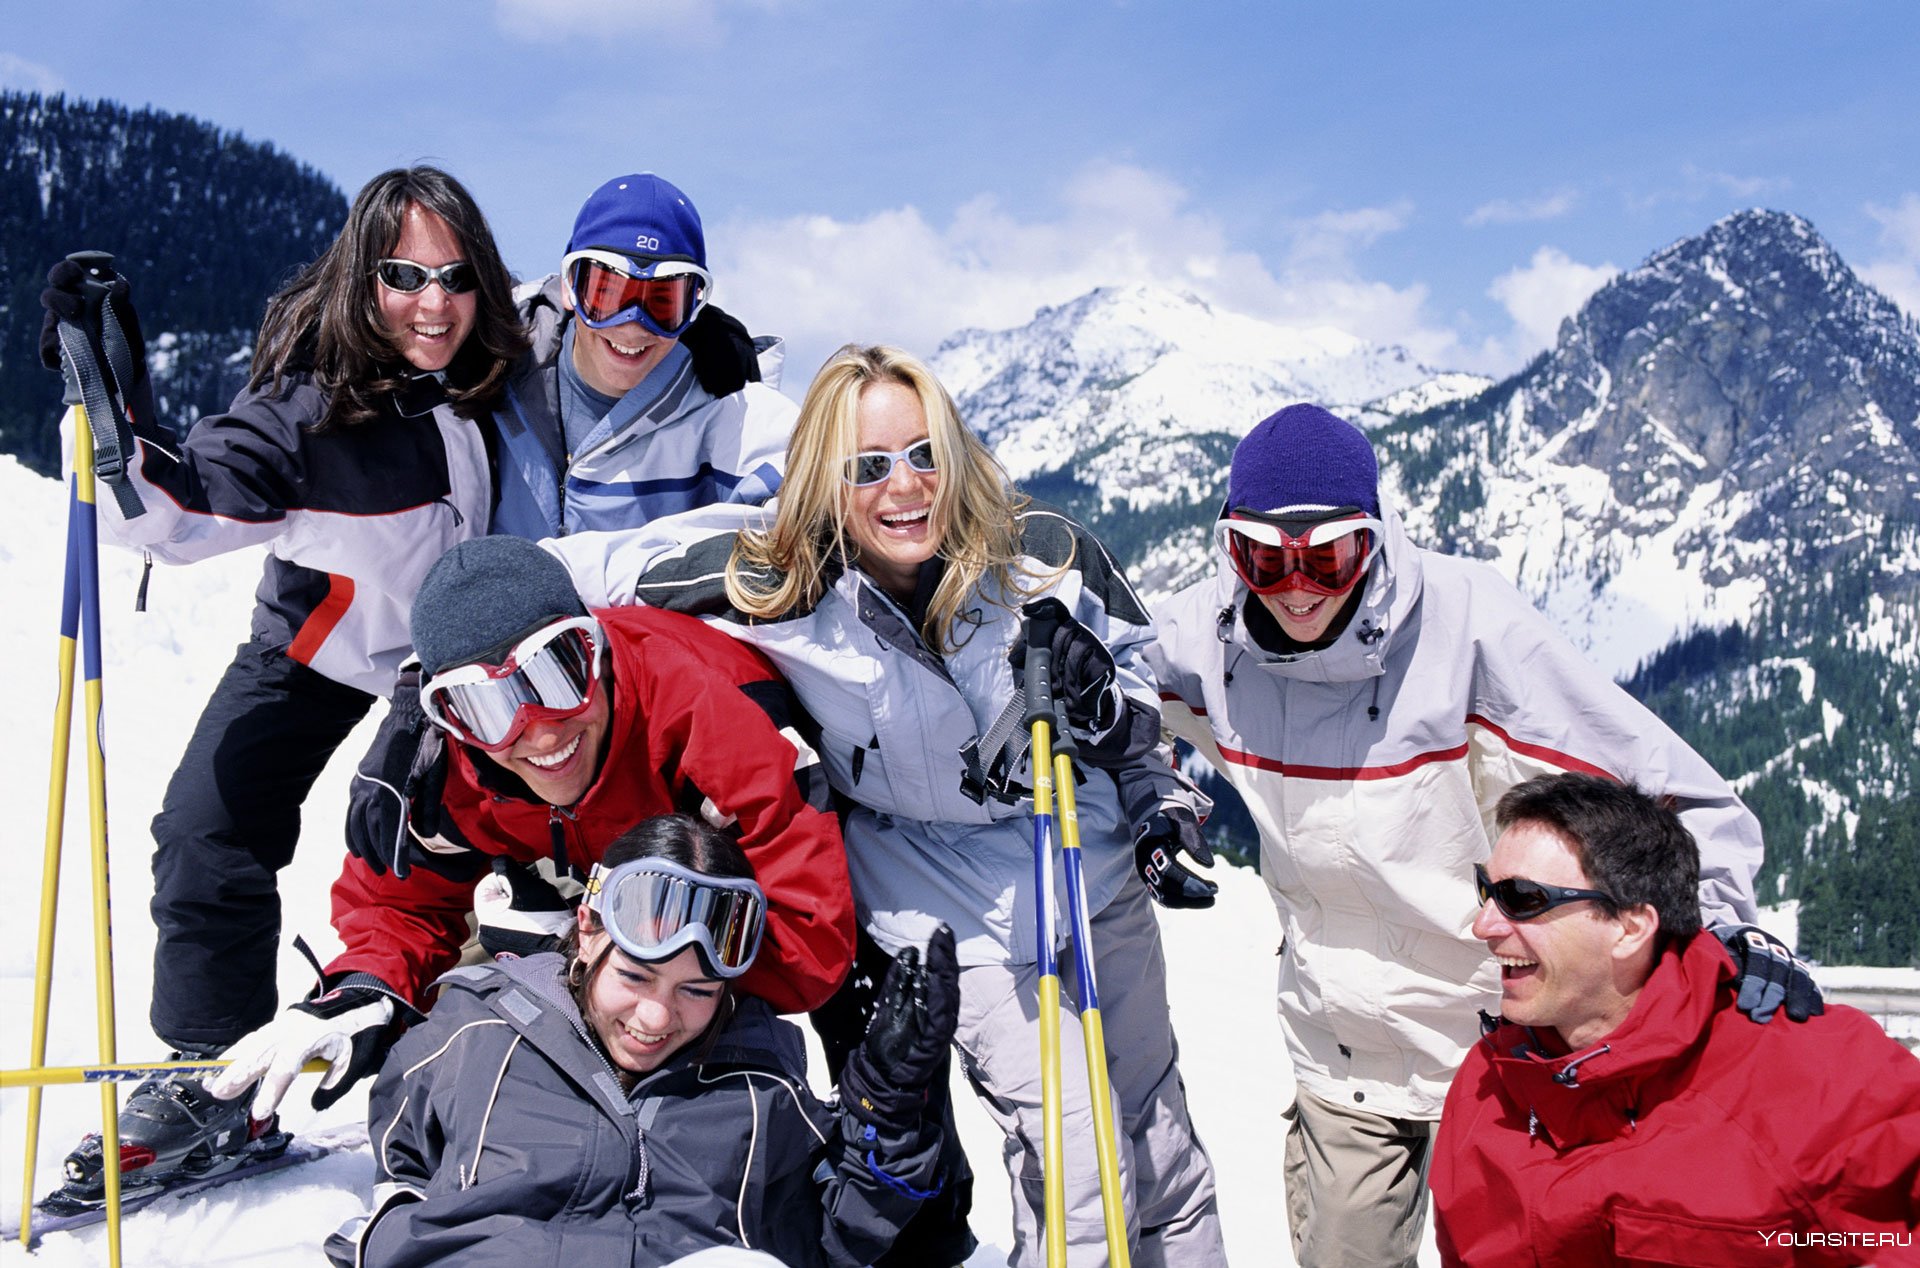 Компания горнолыжный курорт. Люди на горнолыжном курорте. Люди на лыжах в горах. Горнолыжный туризм. Катание на горных лыжах.